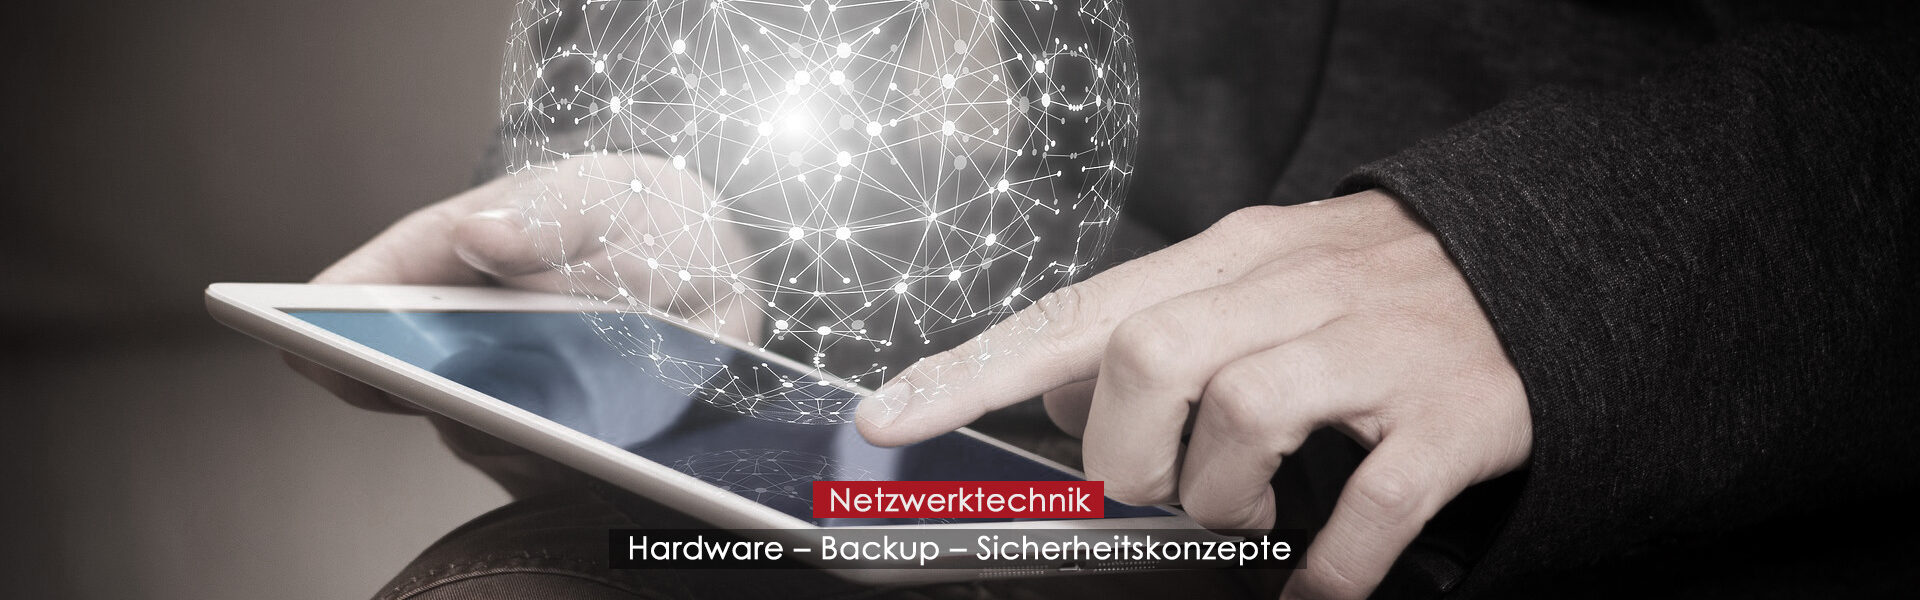 Netzwerktechnik - Hardware - Backup - Sicherheitskonzepte